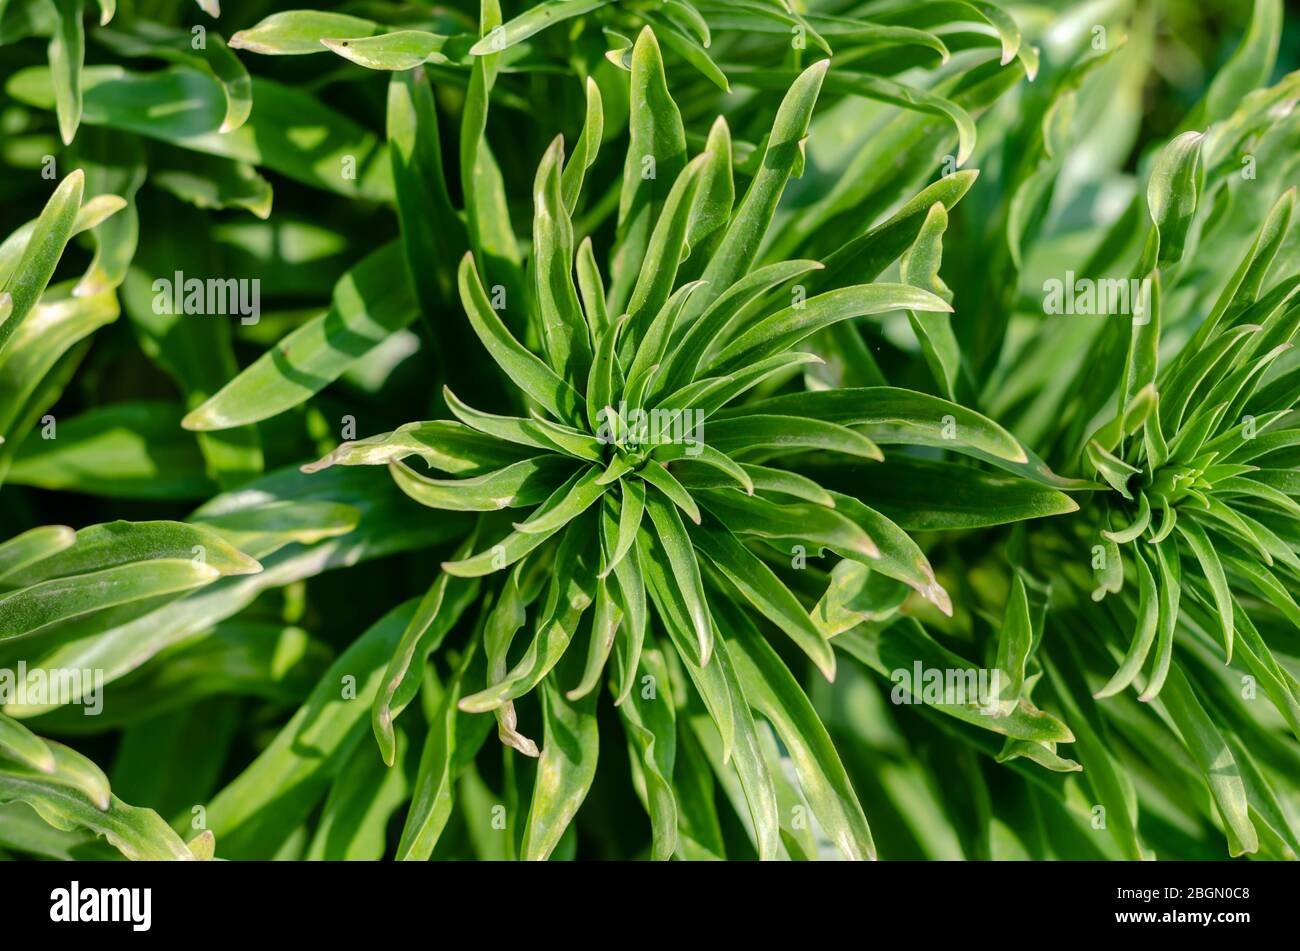 Lily lanceolate ou lilium vancifolium bringé . Feuilles vertes d'une brousse d'un tigre sans fleurs. Poutres apparentes sur feuilles vertes. Vue de dessus. Sél Banque D'Images